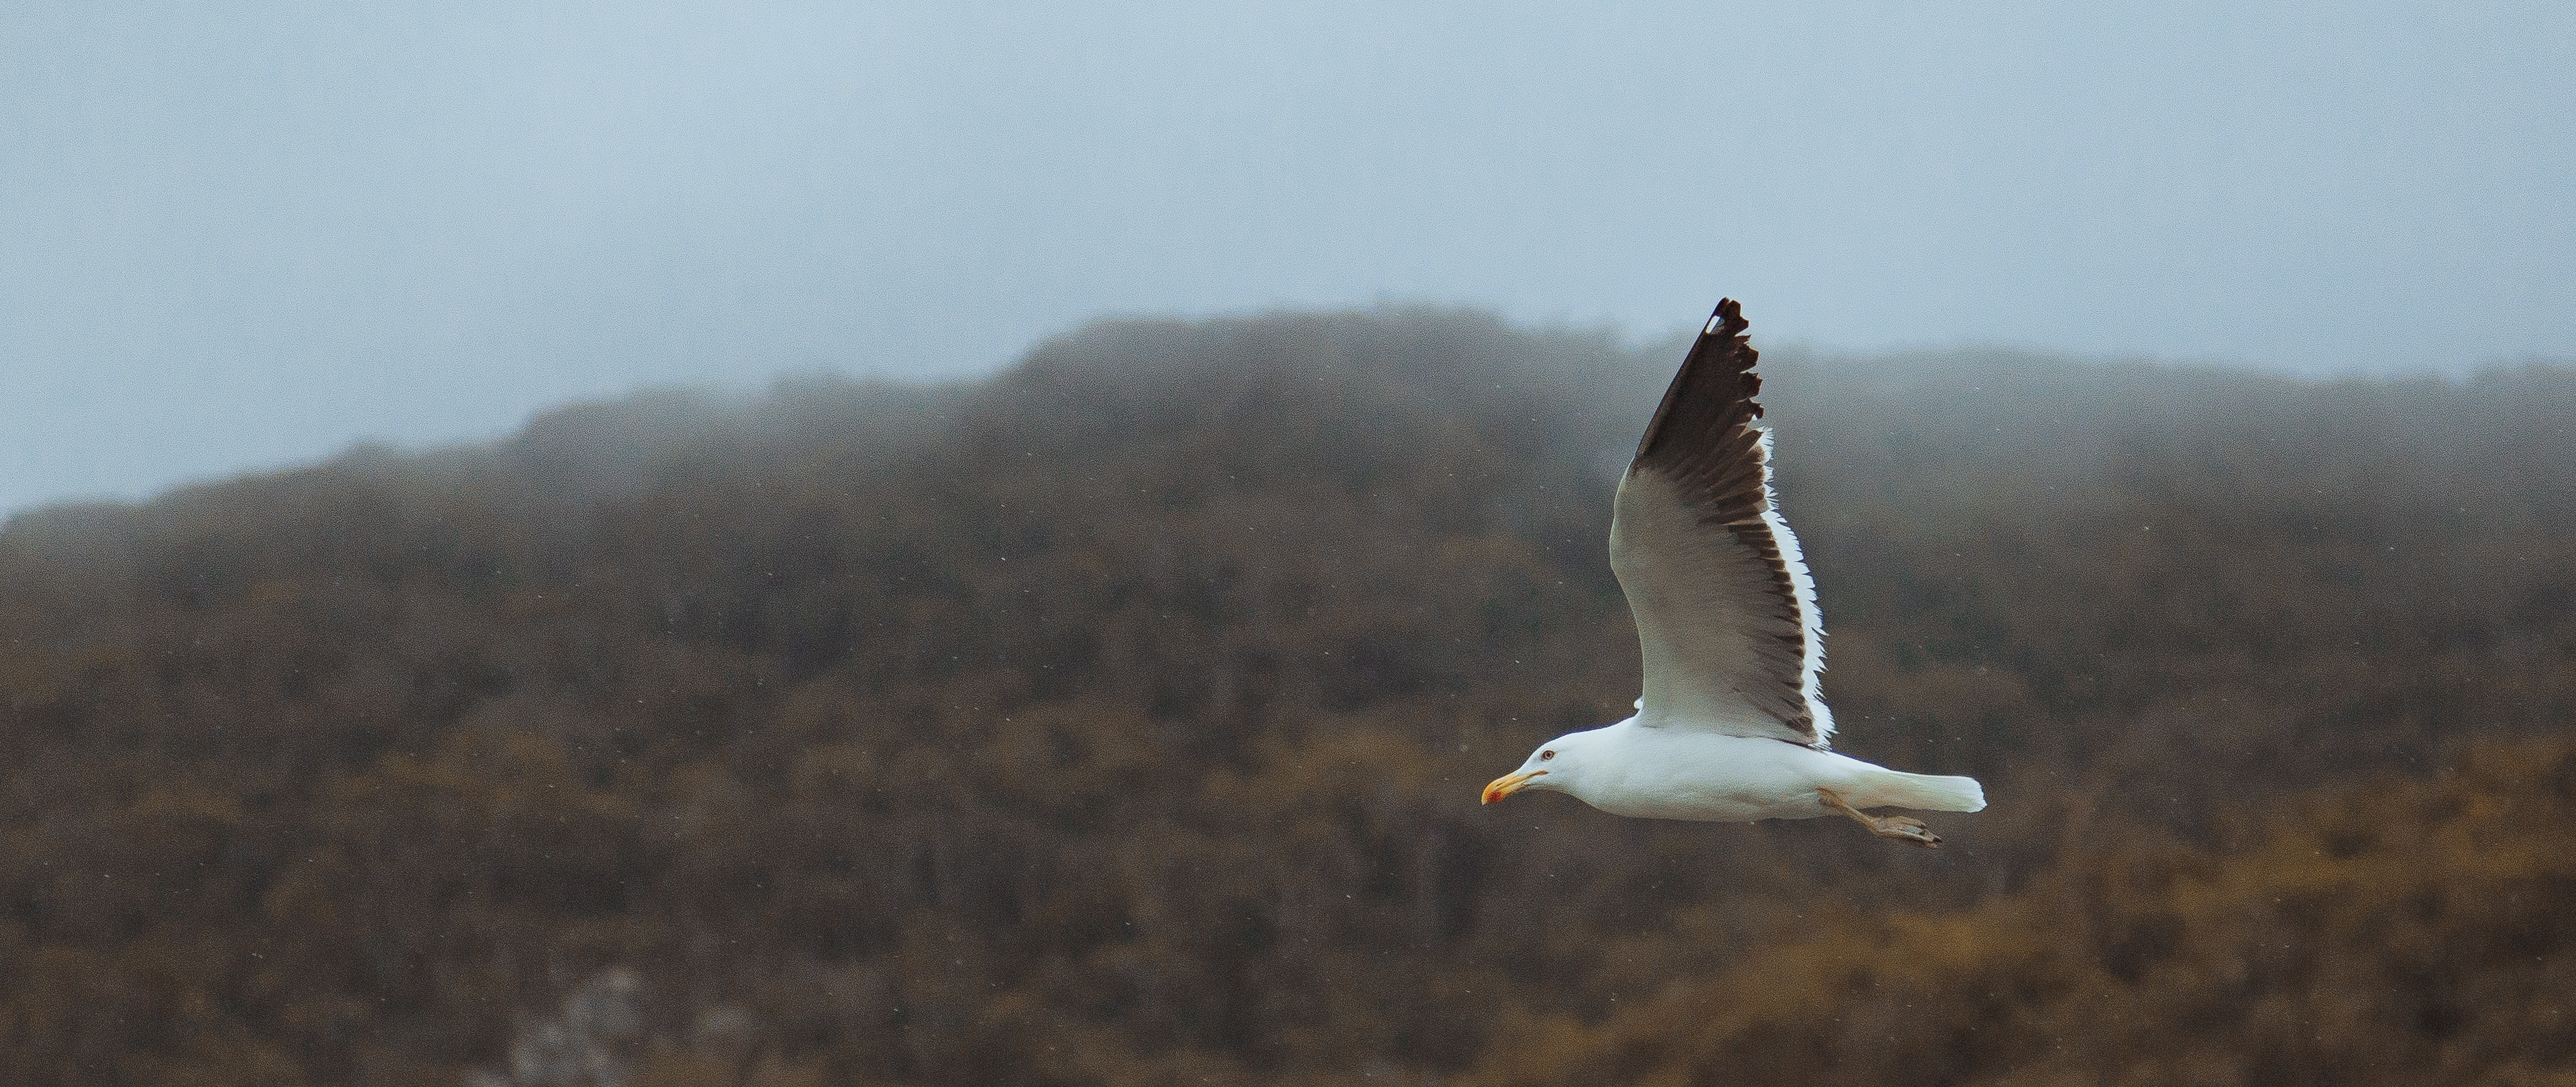 Seagull on flight photo